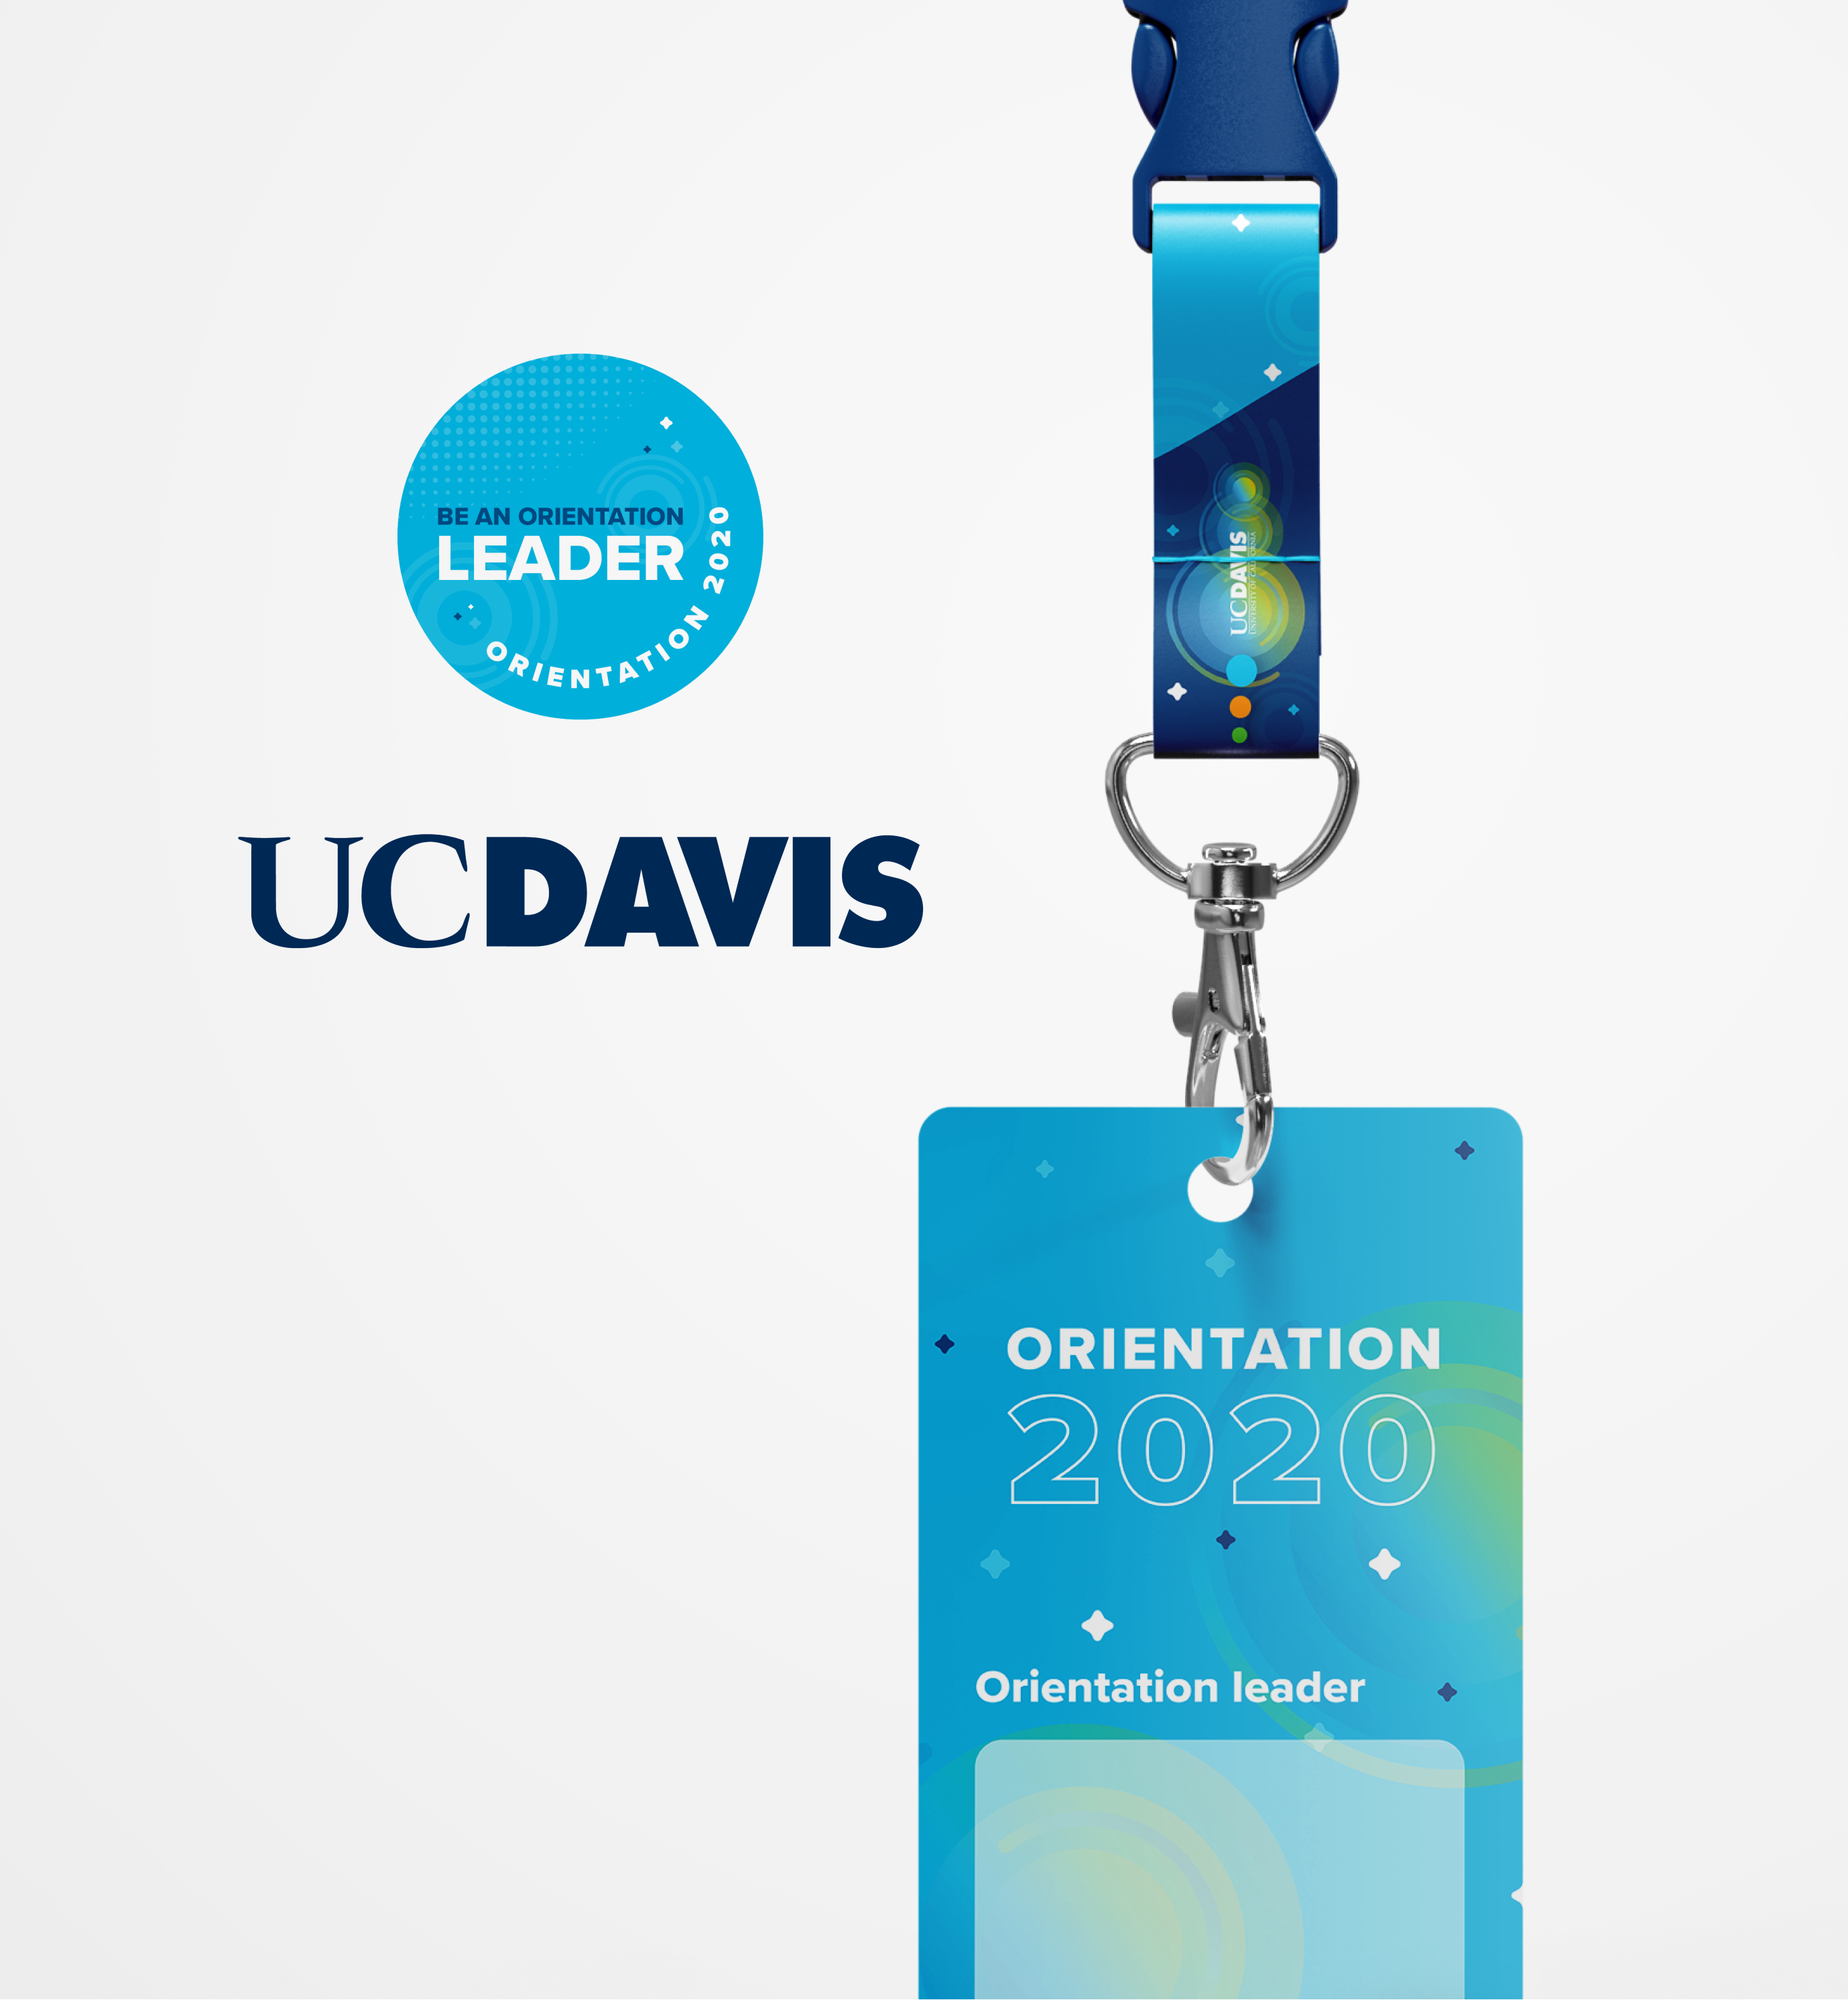 UC Davis Orientation project preview image